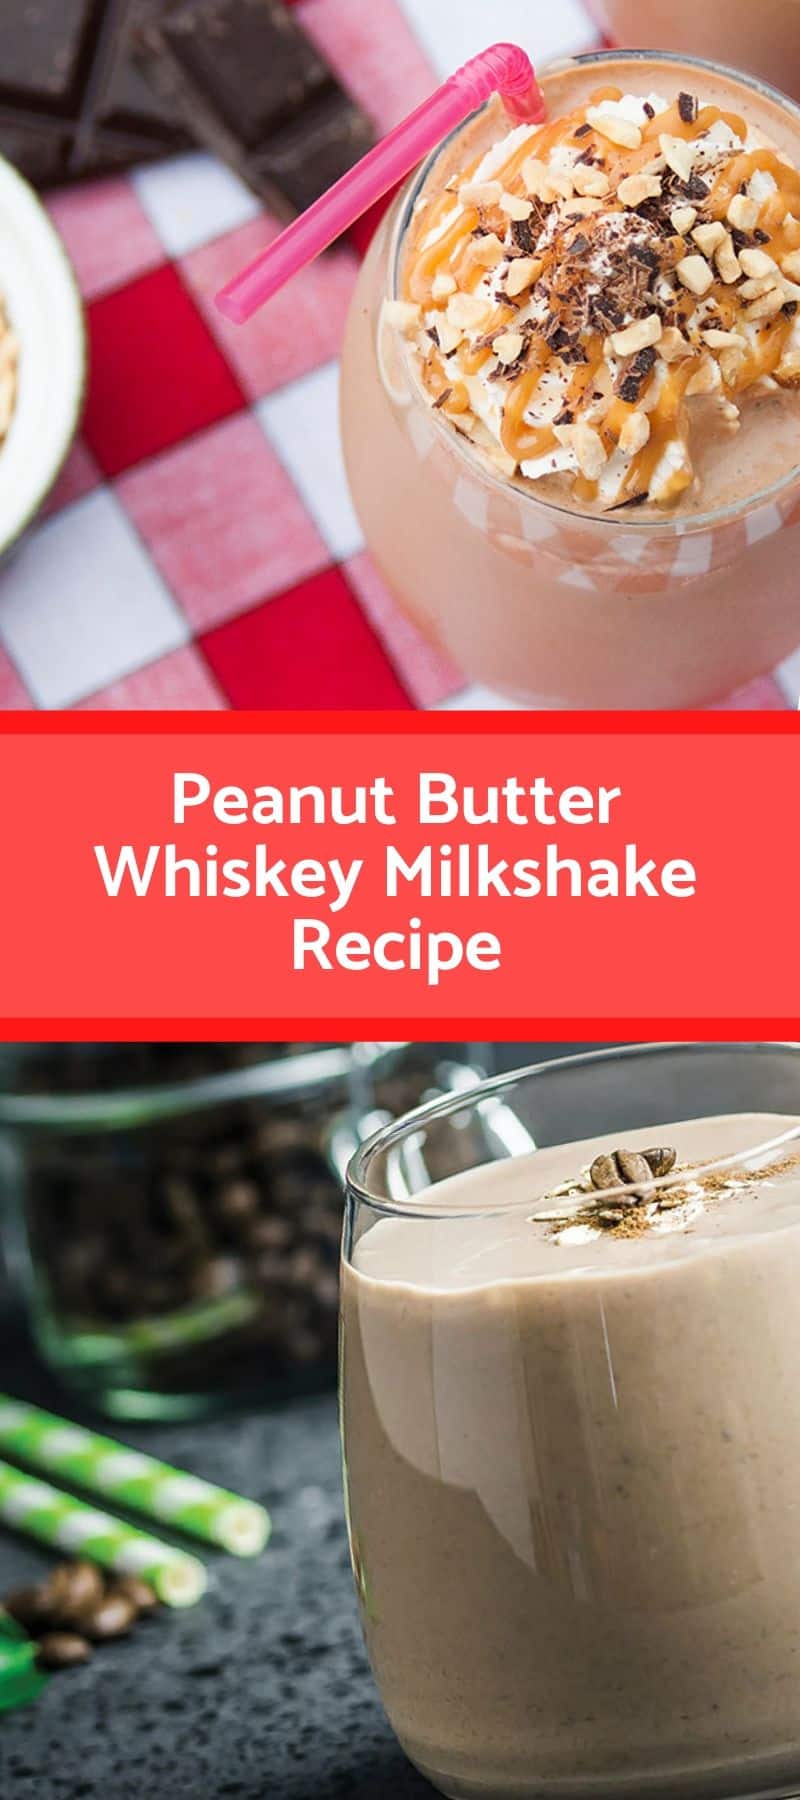 Peanut Butter Whiskey Milkshake Recipe